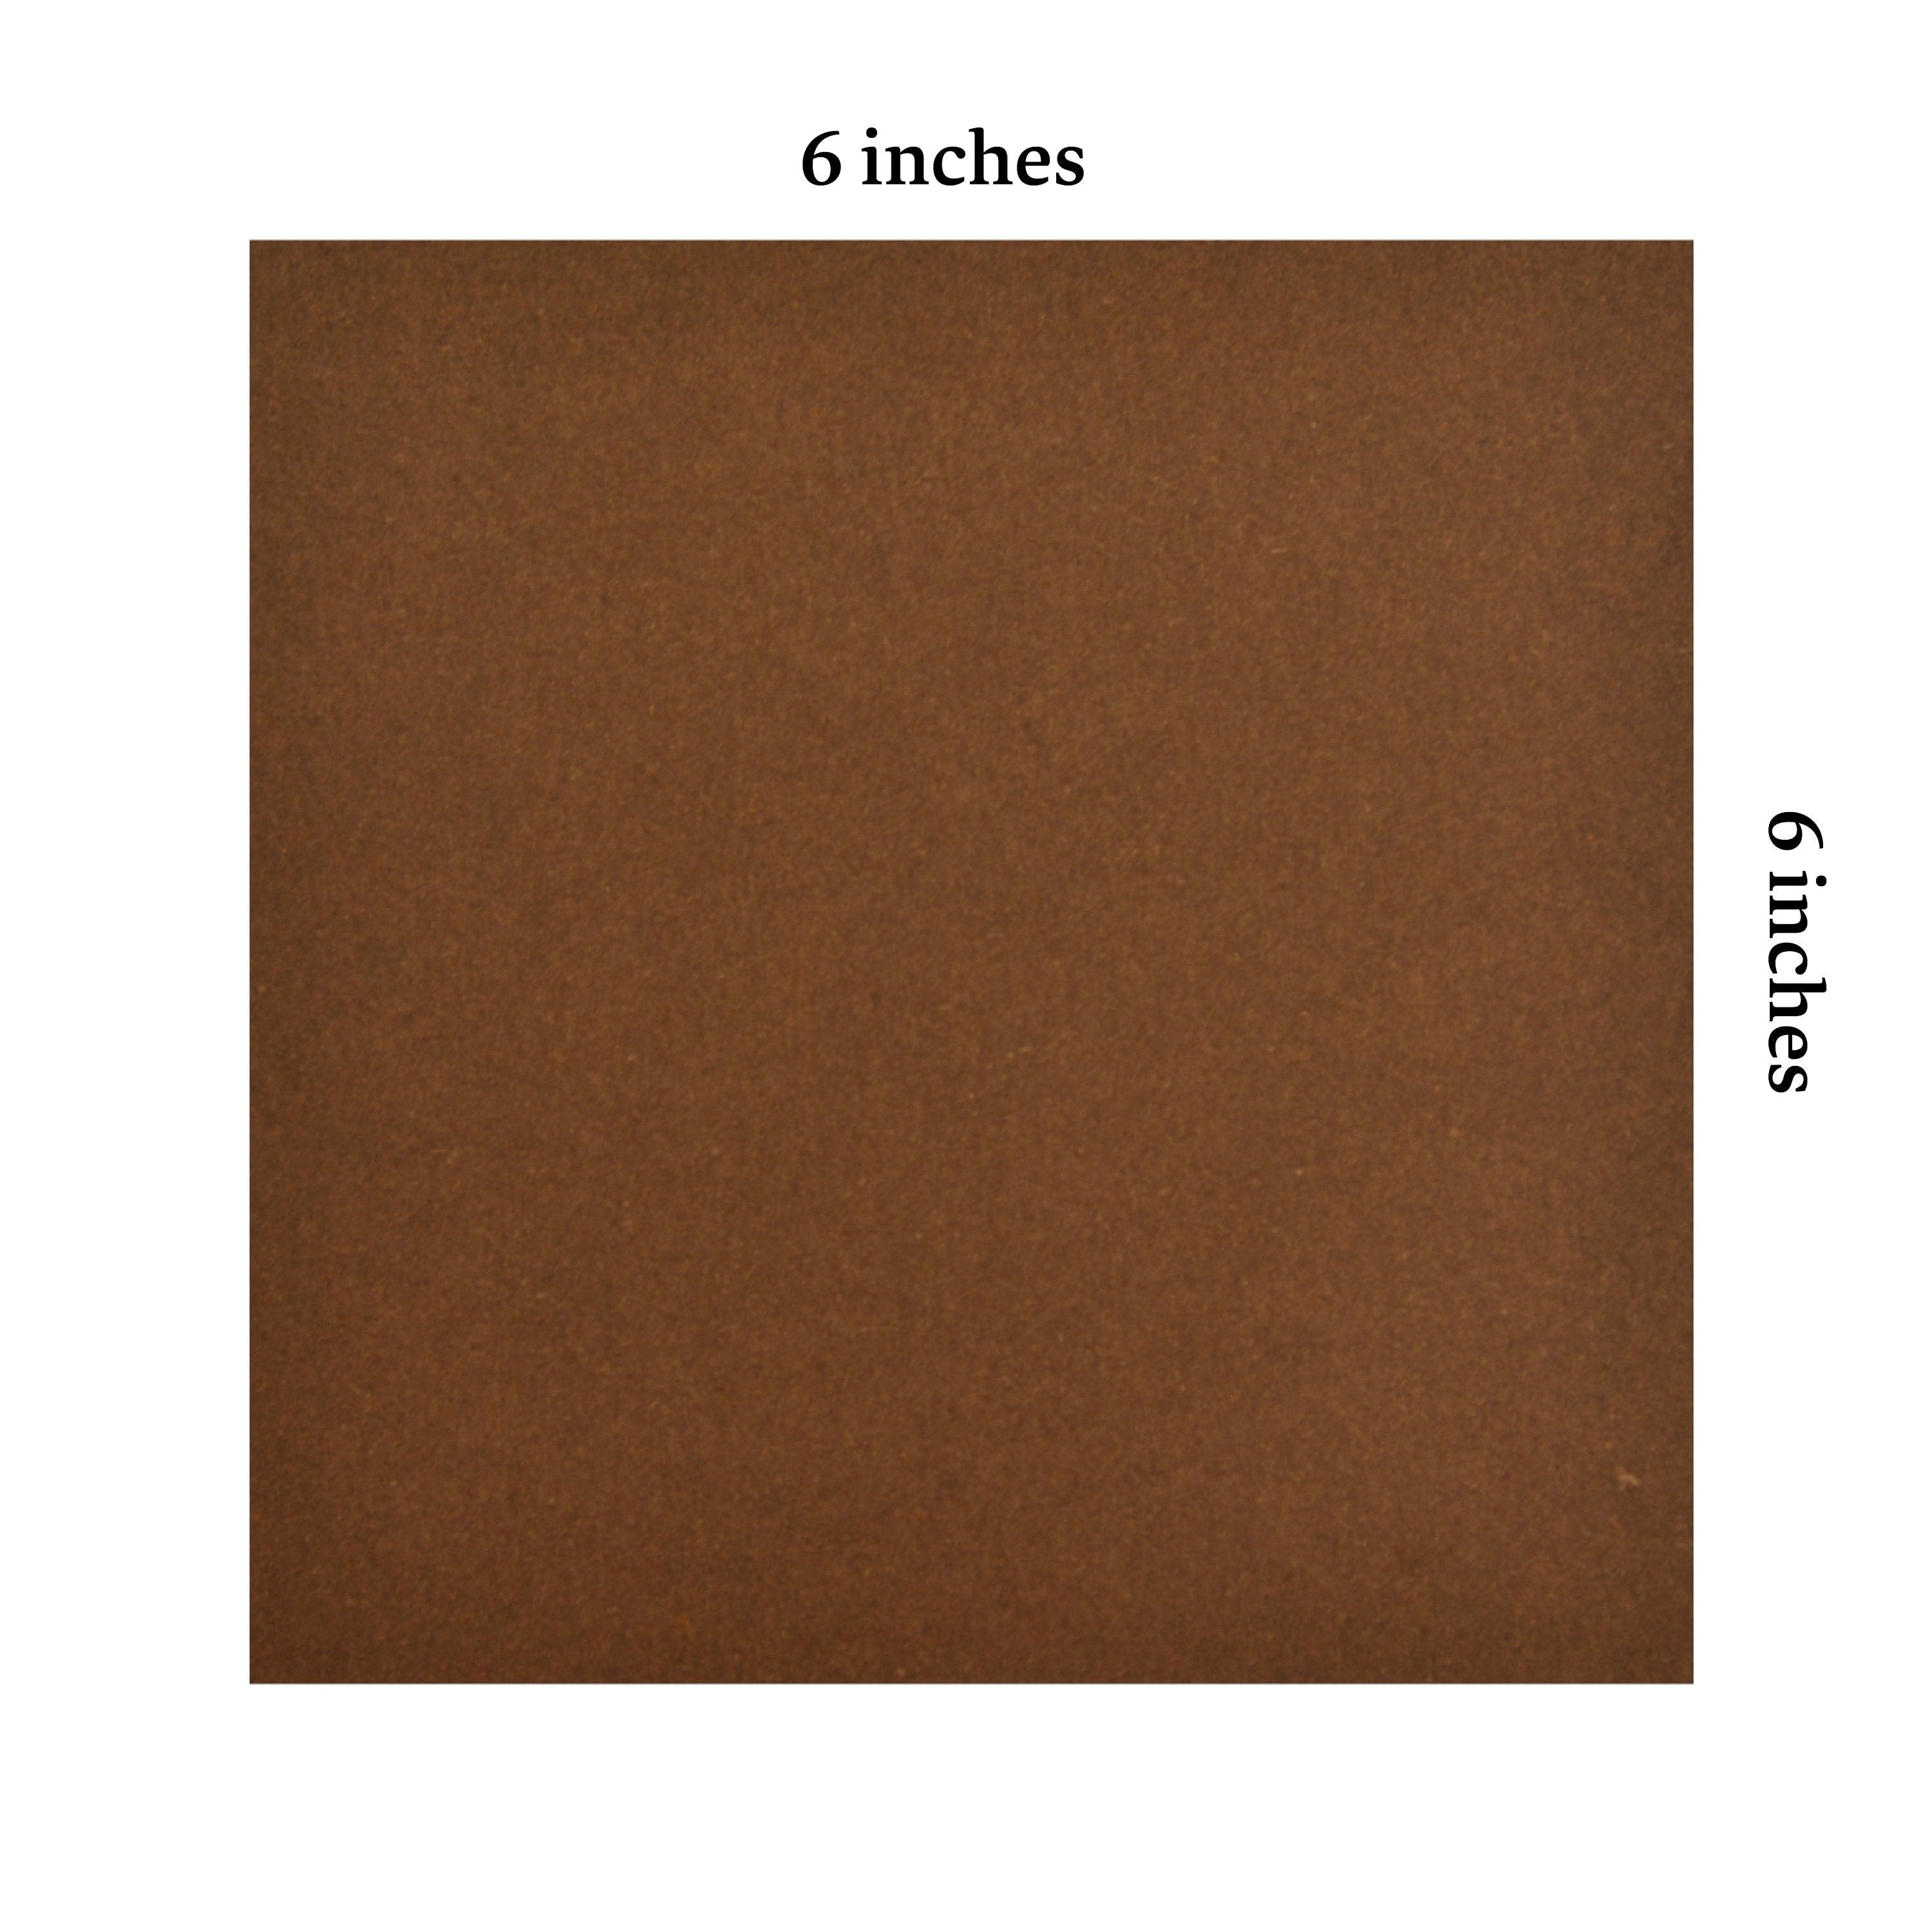 100 fogli di carta origami marrone - 6x6 pollici - Confezione di carta quadrata per piegare, gru origami e decorazioni - S07